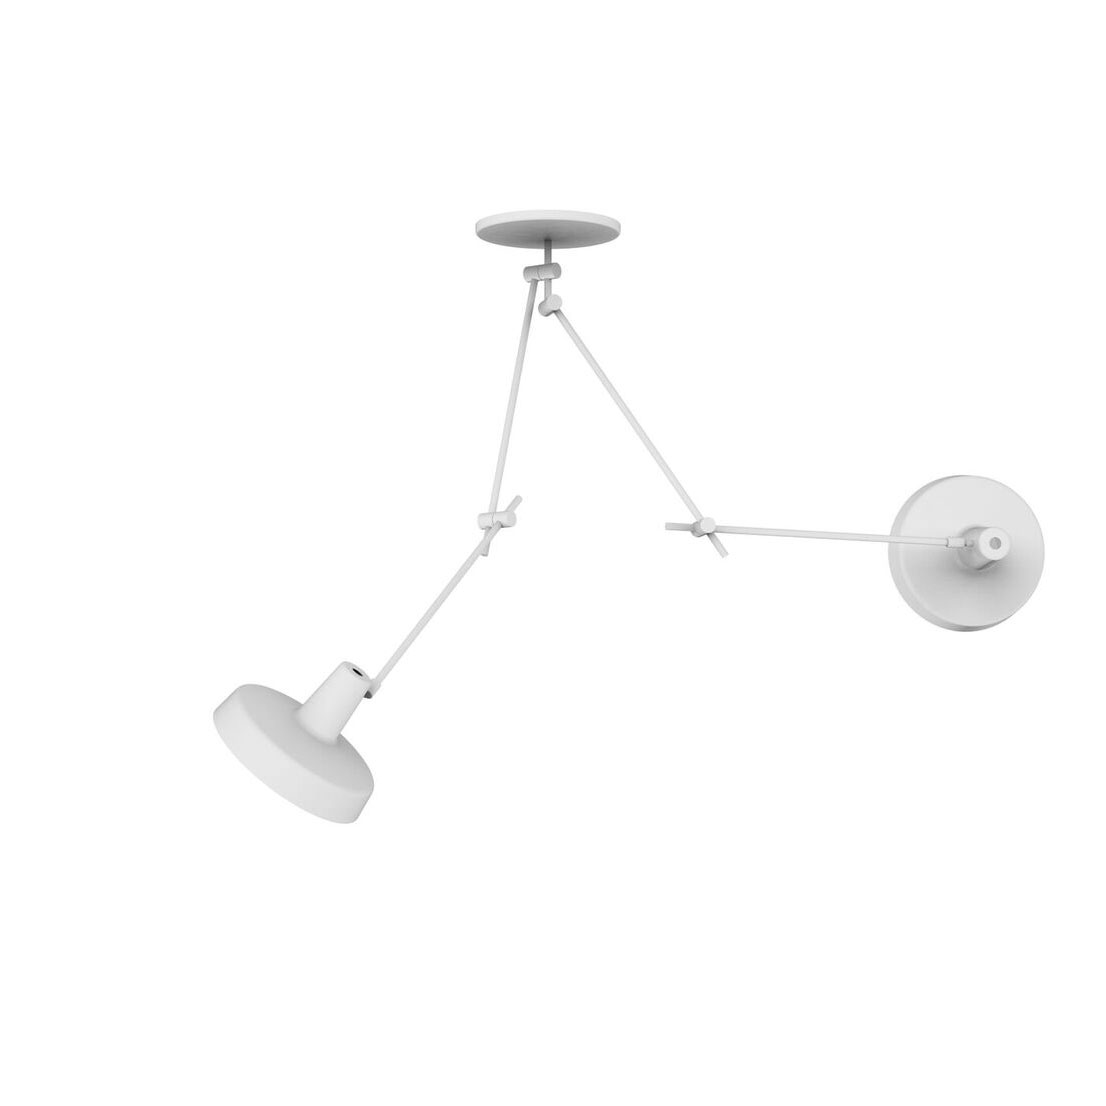 uitgehongerd Wijde selectie Absorberen Arigato Dubbele Plafondlamp AR-C2 Design Grupa - Smukdesign